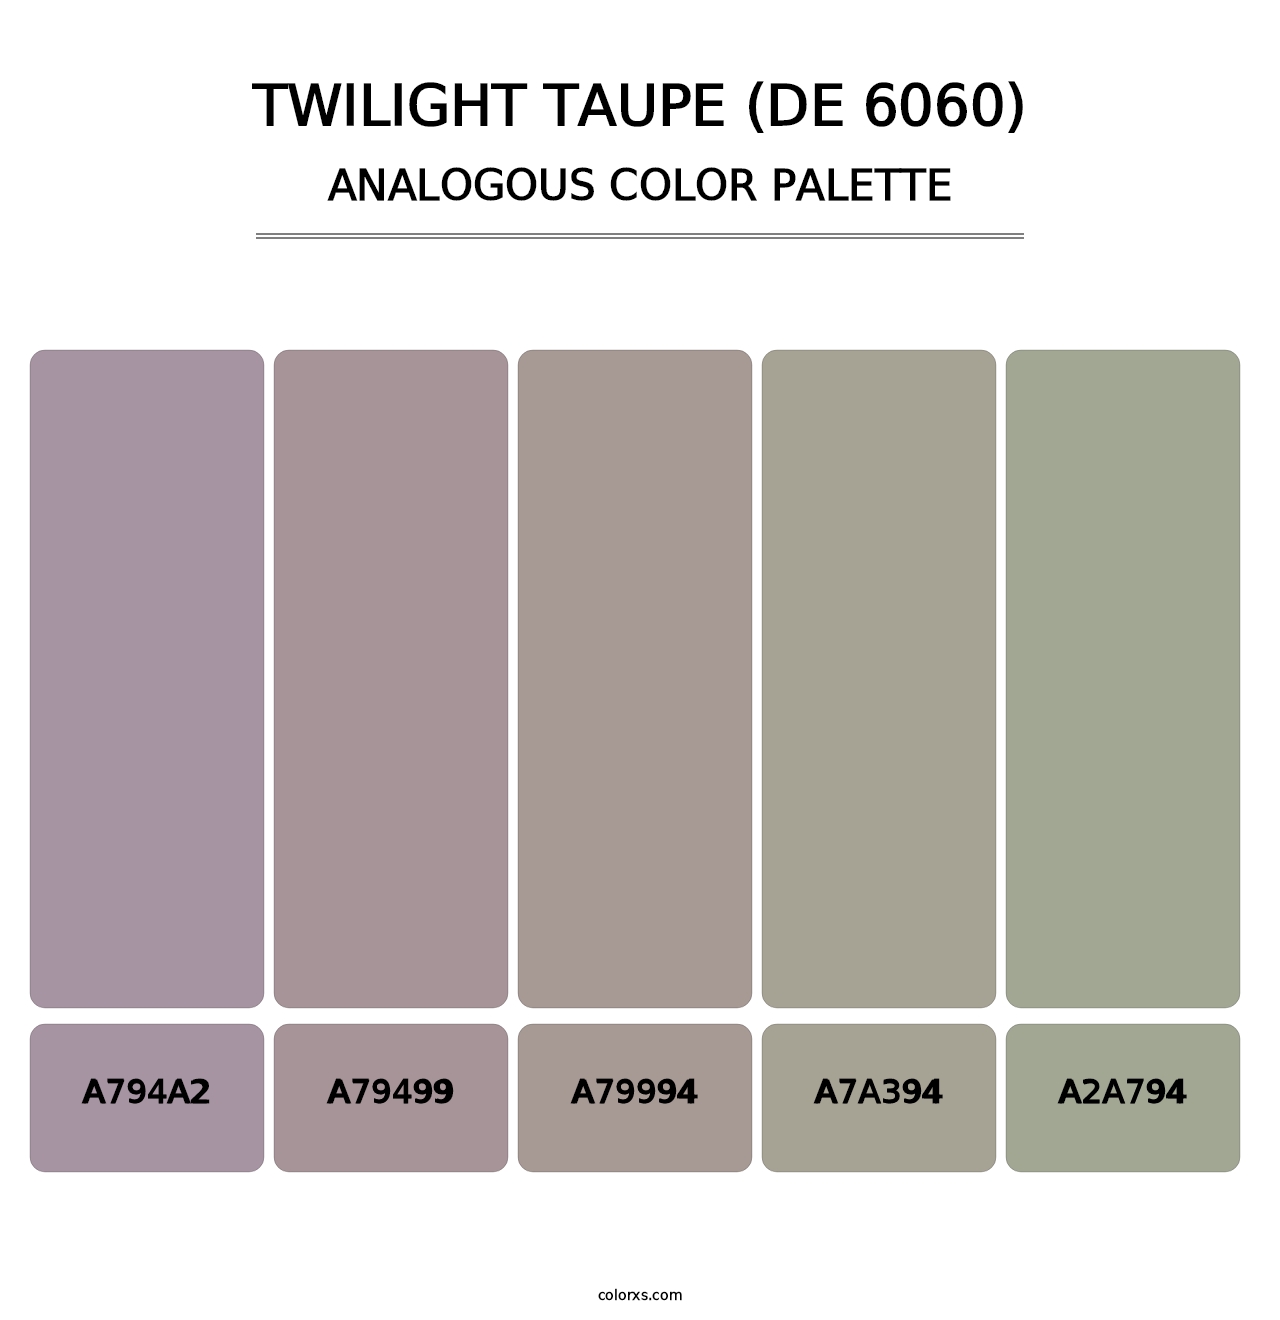 Twilight Taupe (DE 6060) - Analogous Color Palette